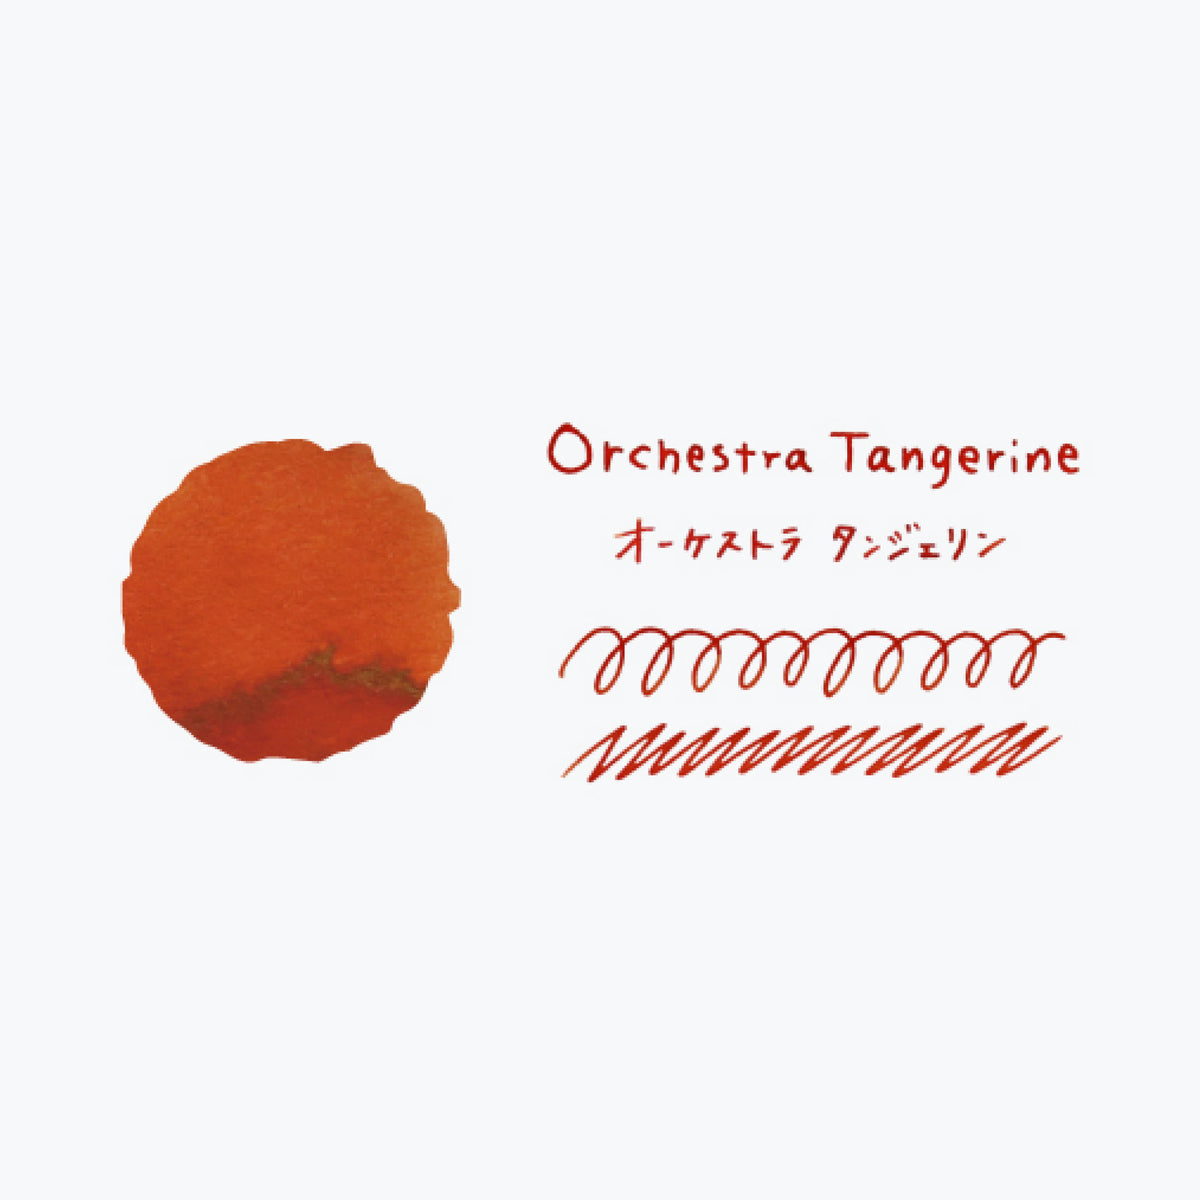 Teranishi - Fountain Pen Ink - Guitar Haikara - Orchestra Tangerine